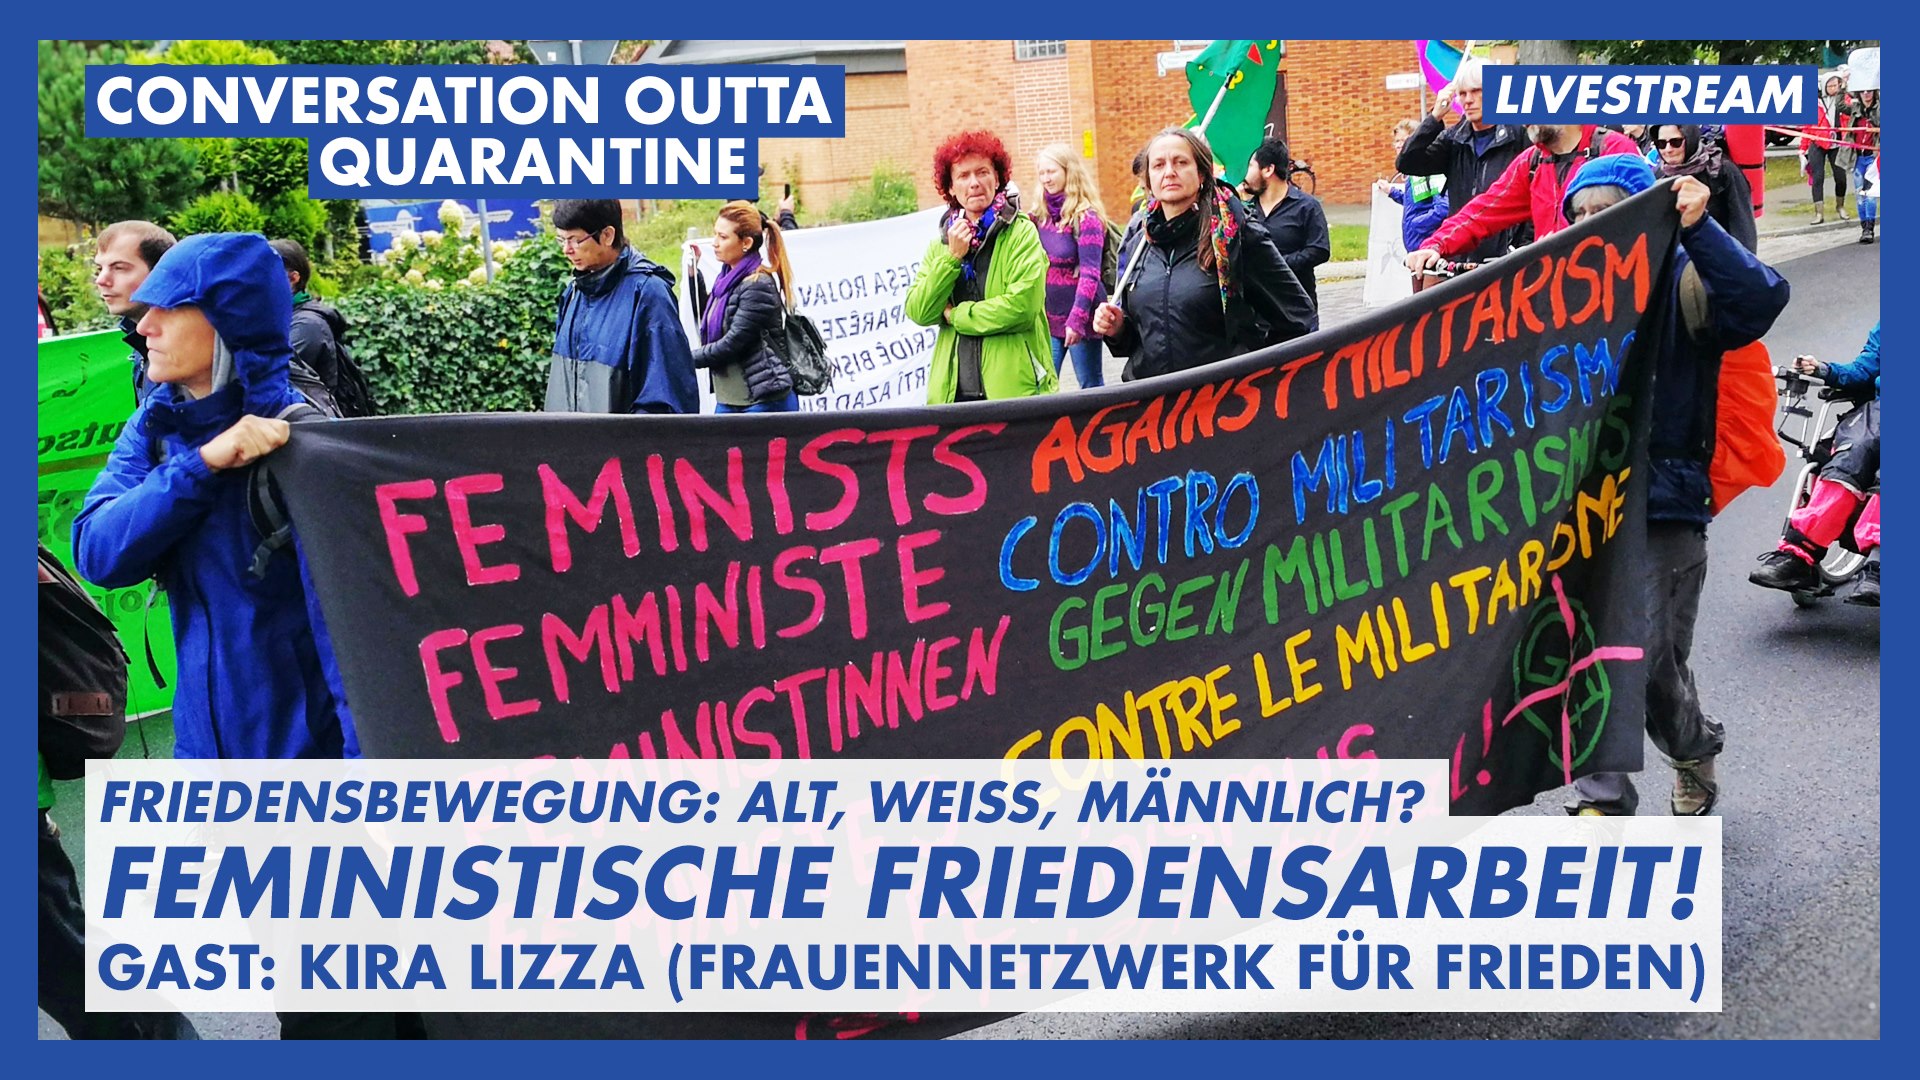 Conversation outta Quarantine Feministische Friedenspolitik